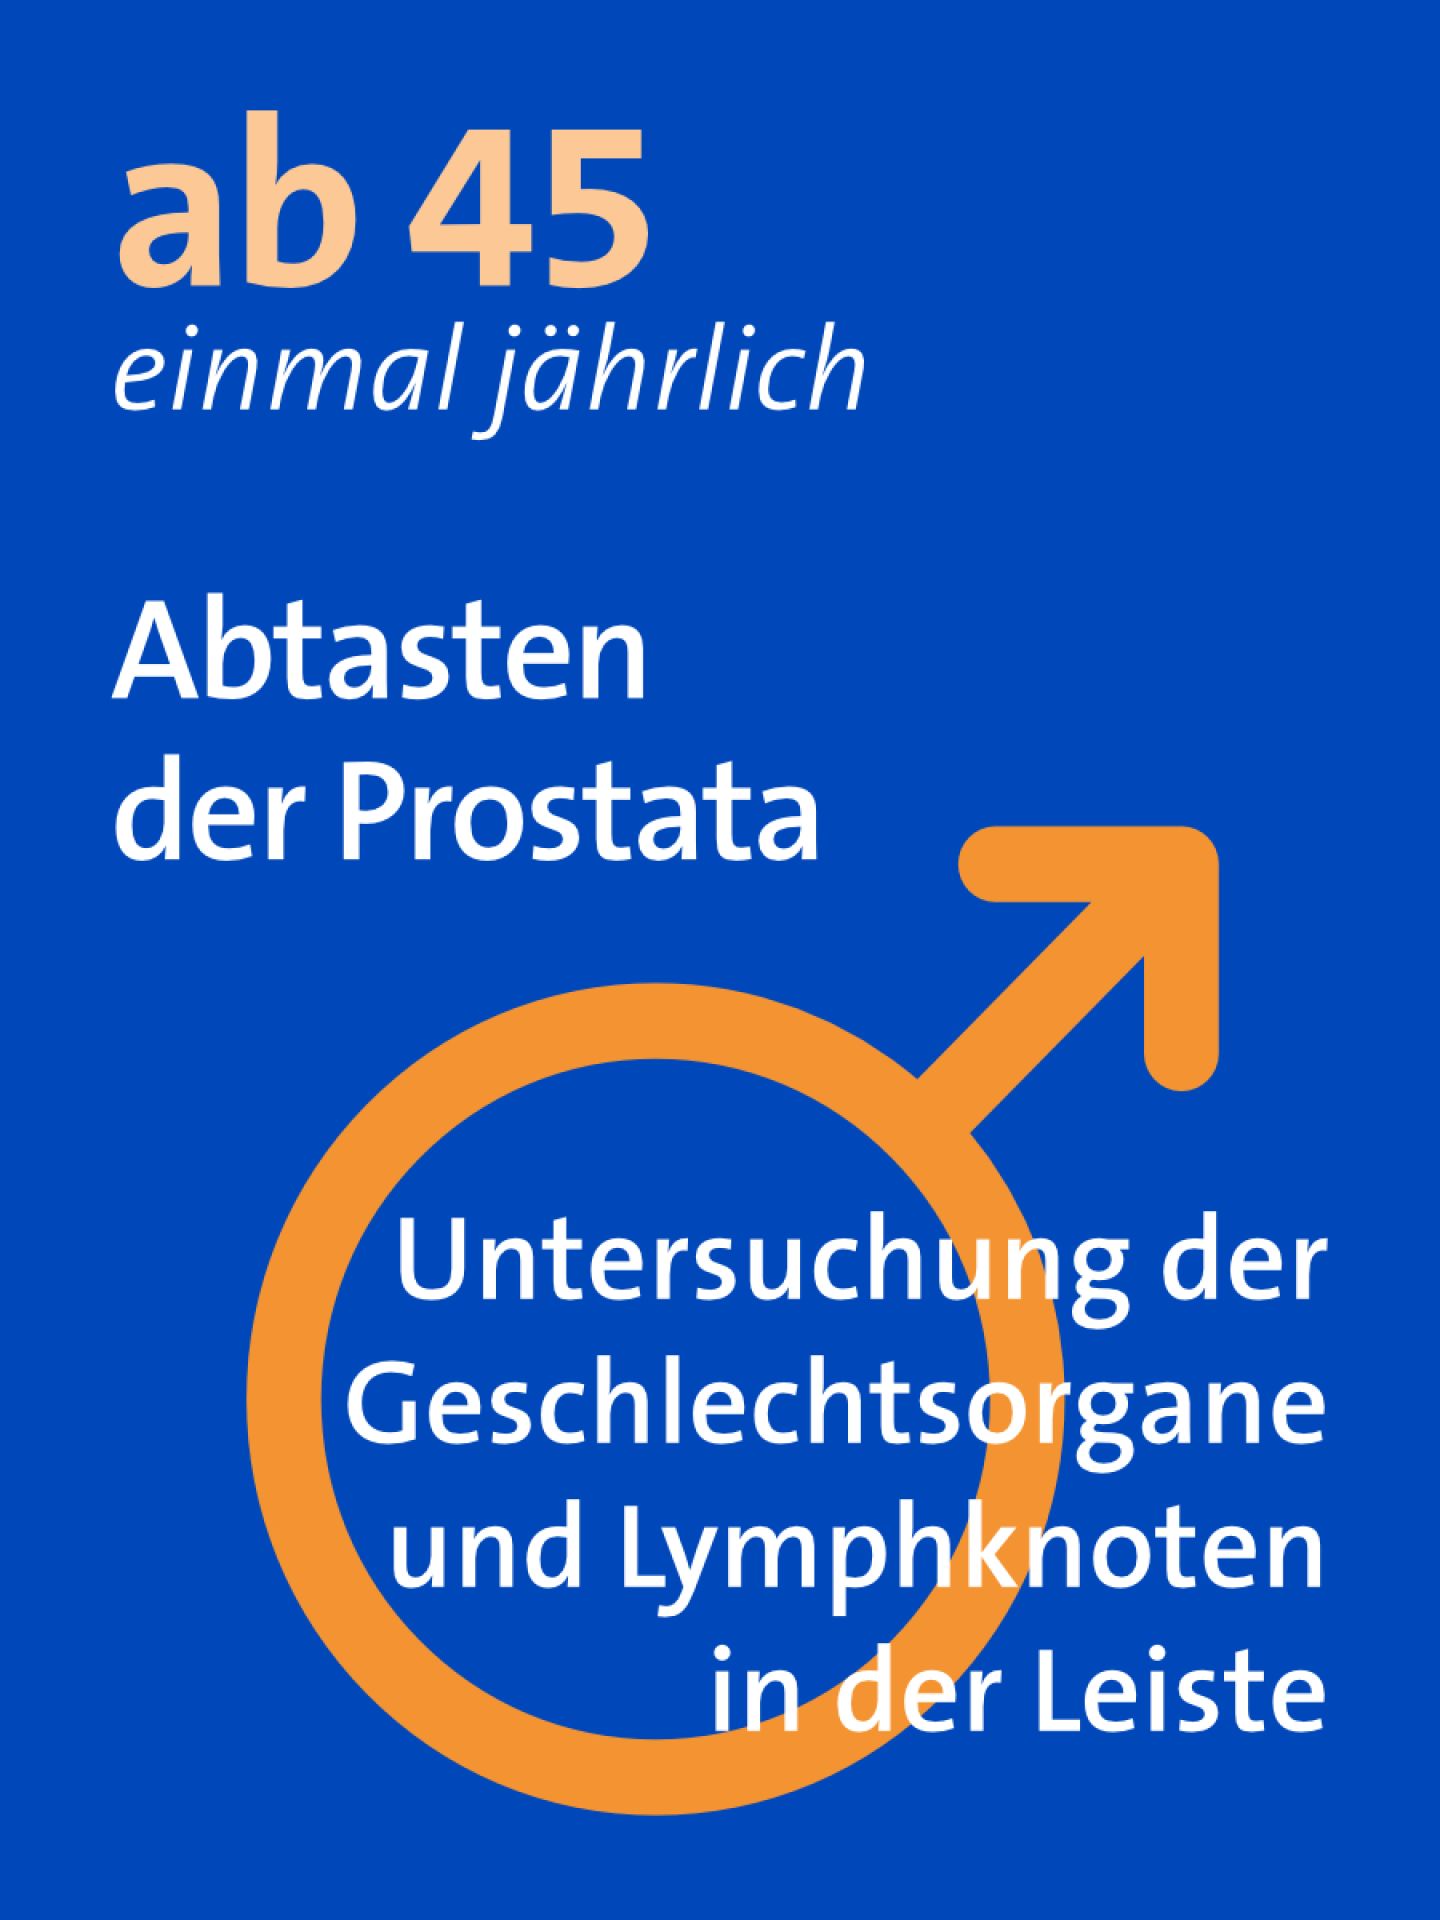 deutsche gesellschaft prostatakrebs cum să micșorezi prostata